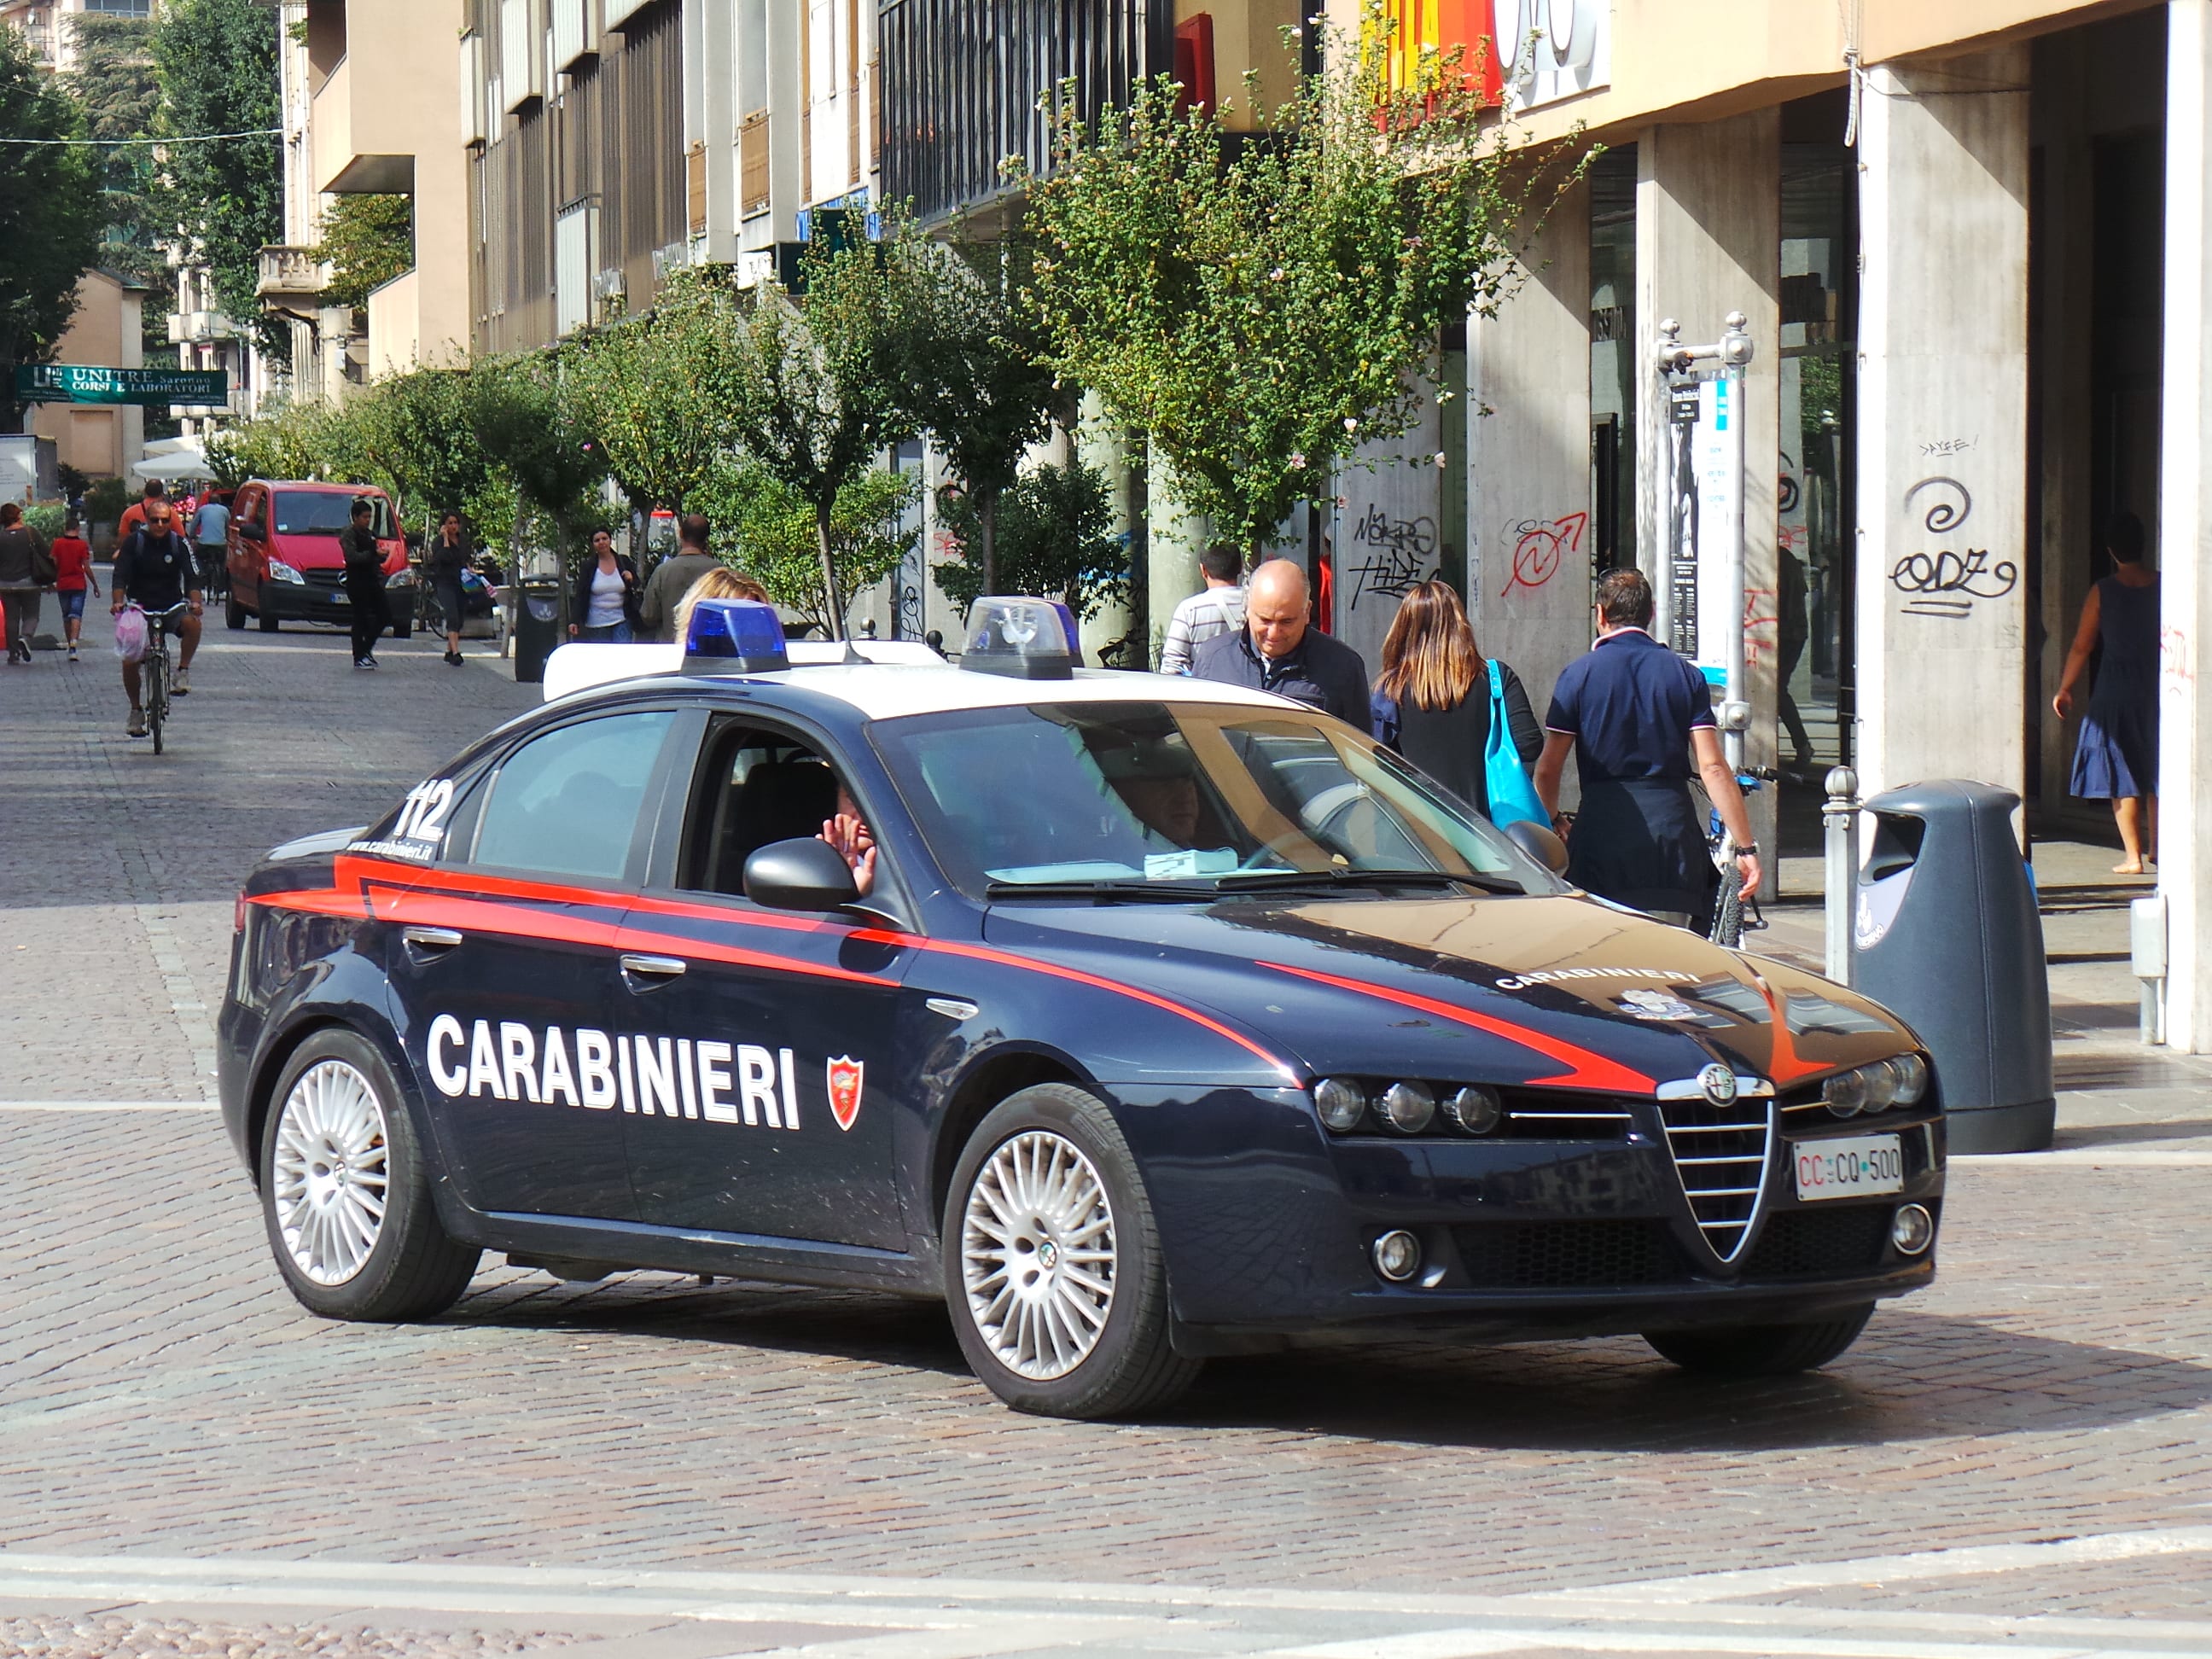 Lite al bar in corso Italia a Saronno, arrivano i carabinieri